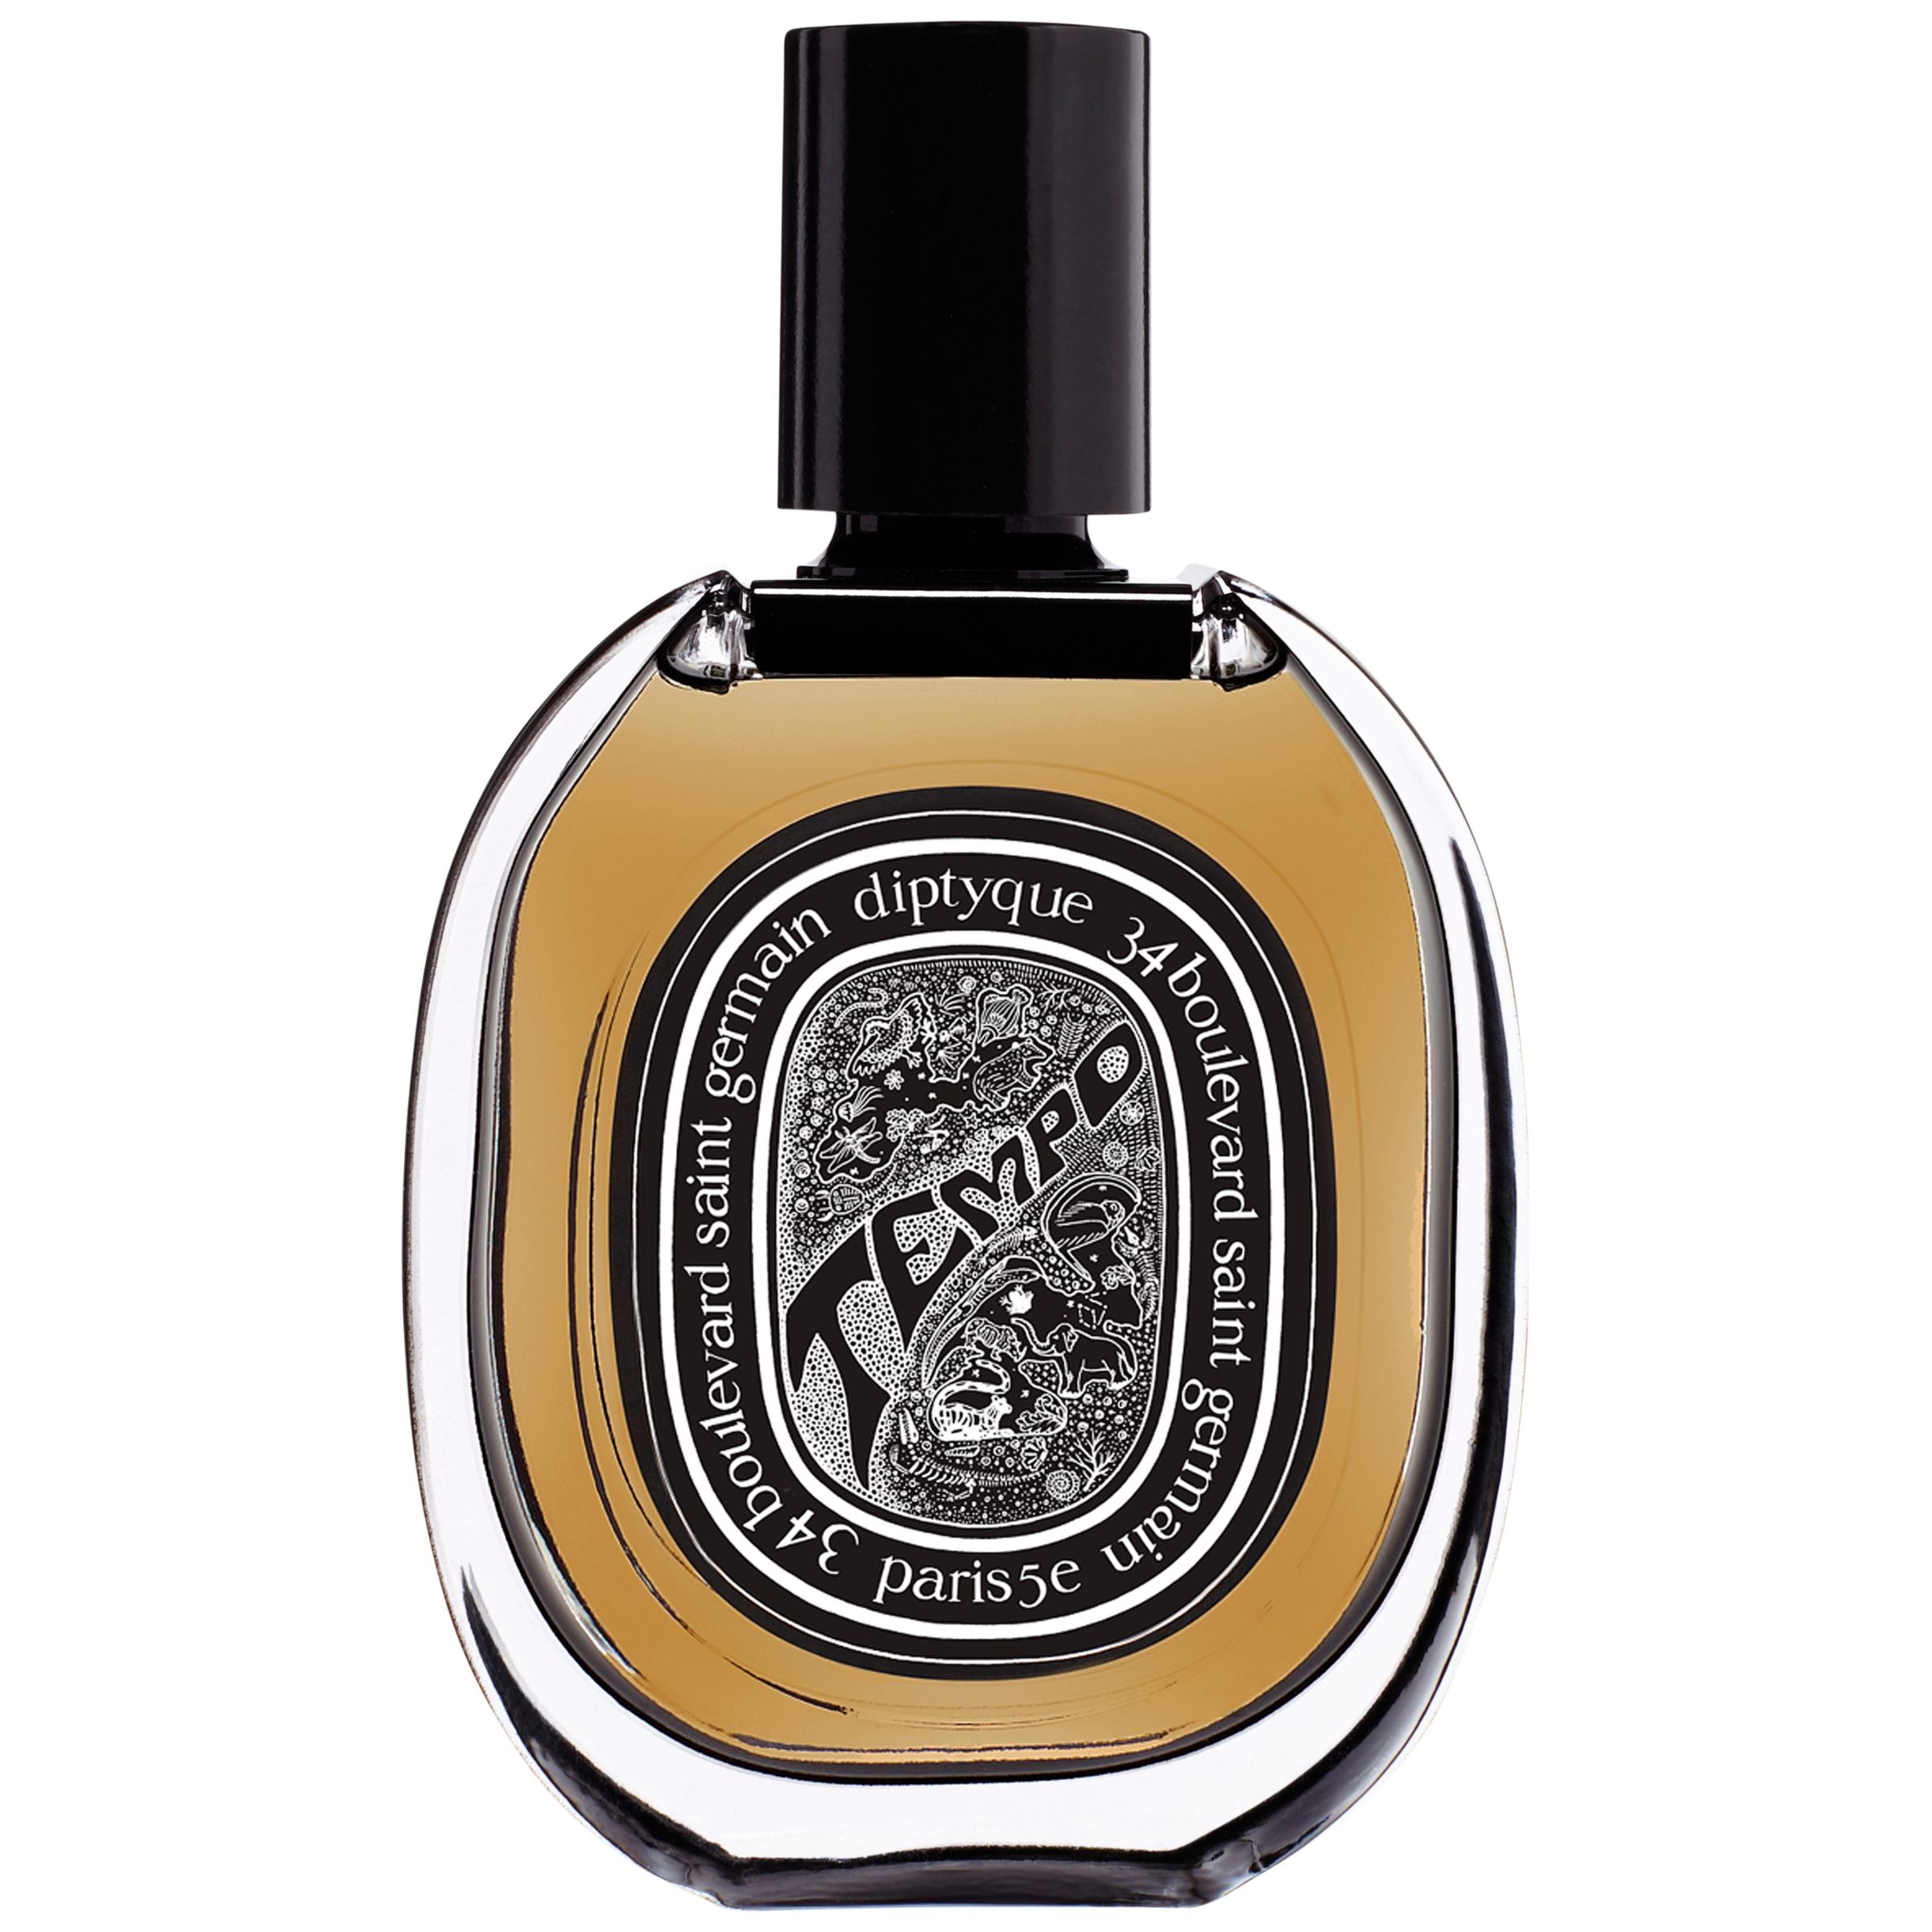 Diptyque Tempo Eau de Parfum, 75ml at John Lewis & Partners